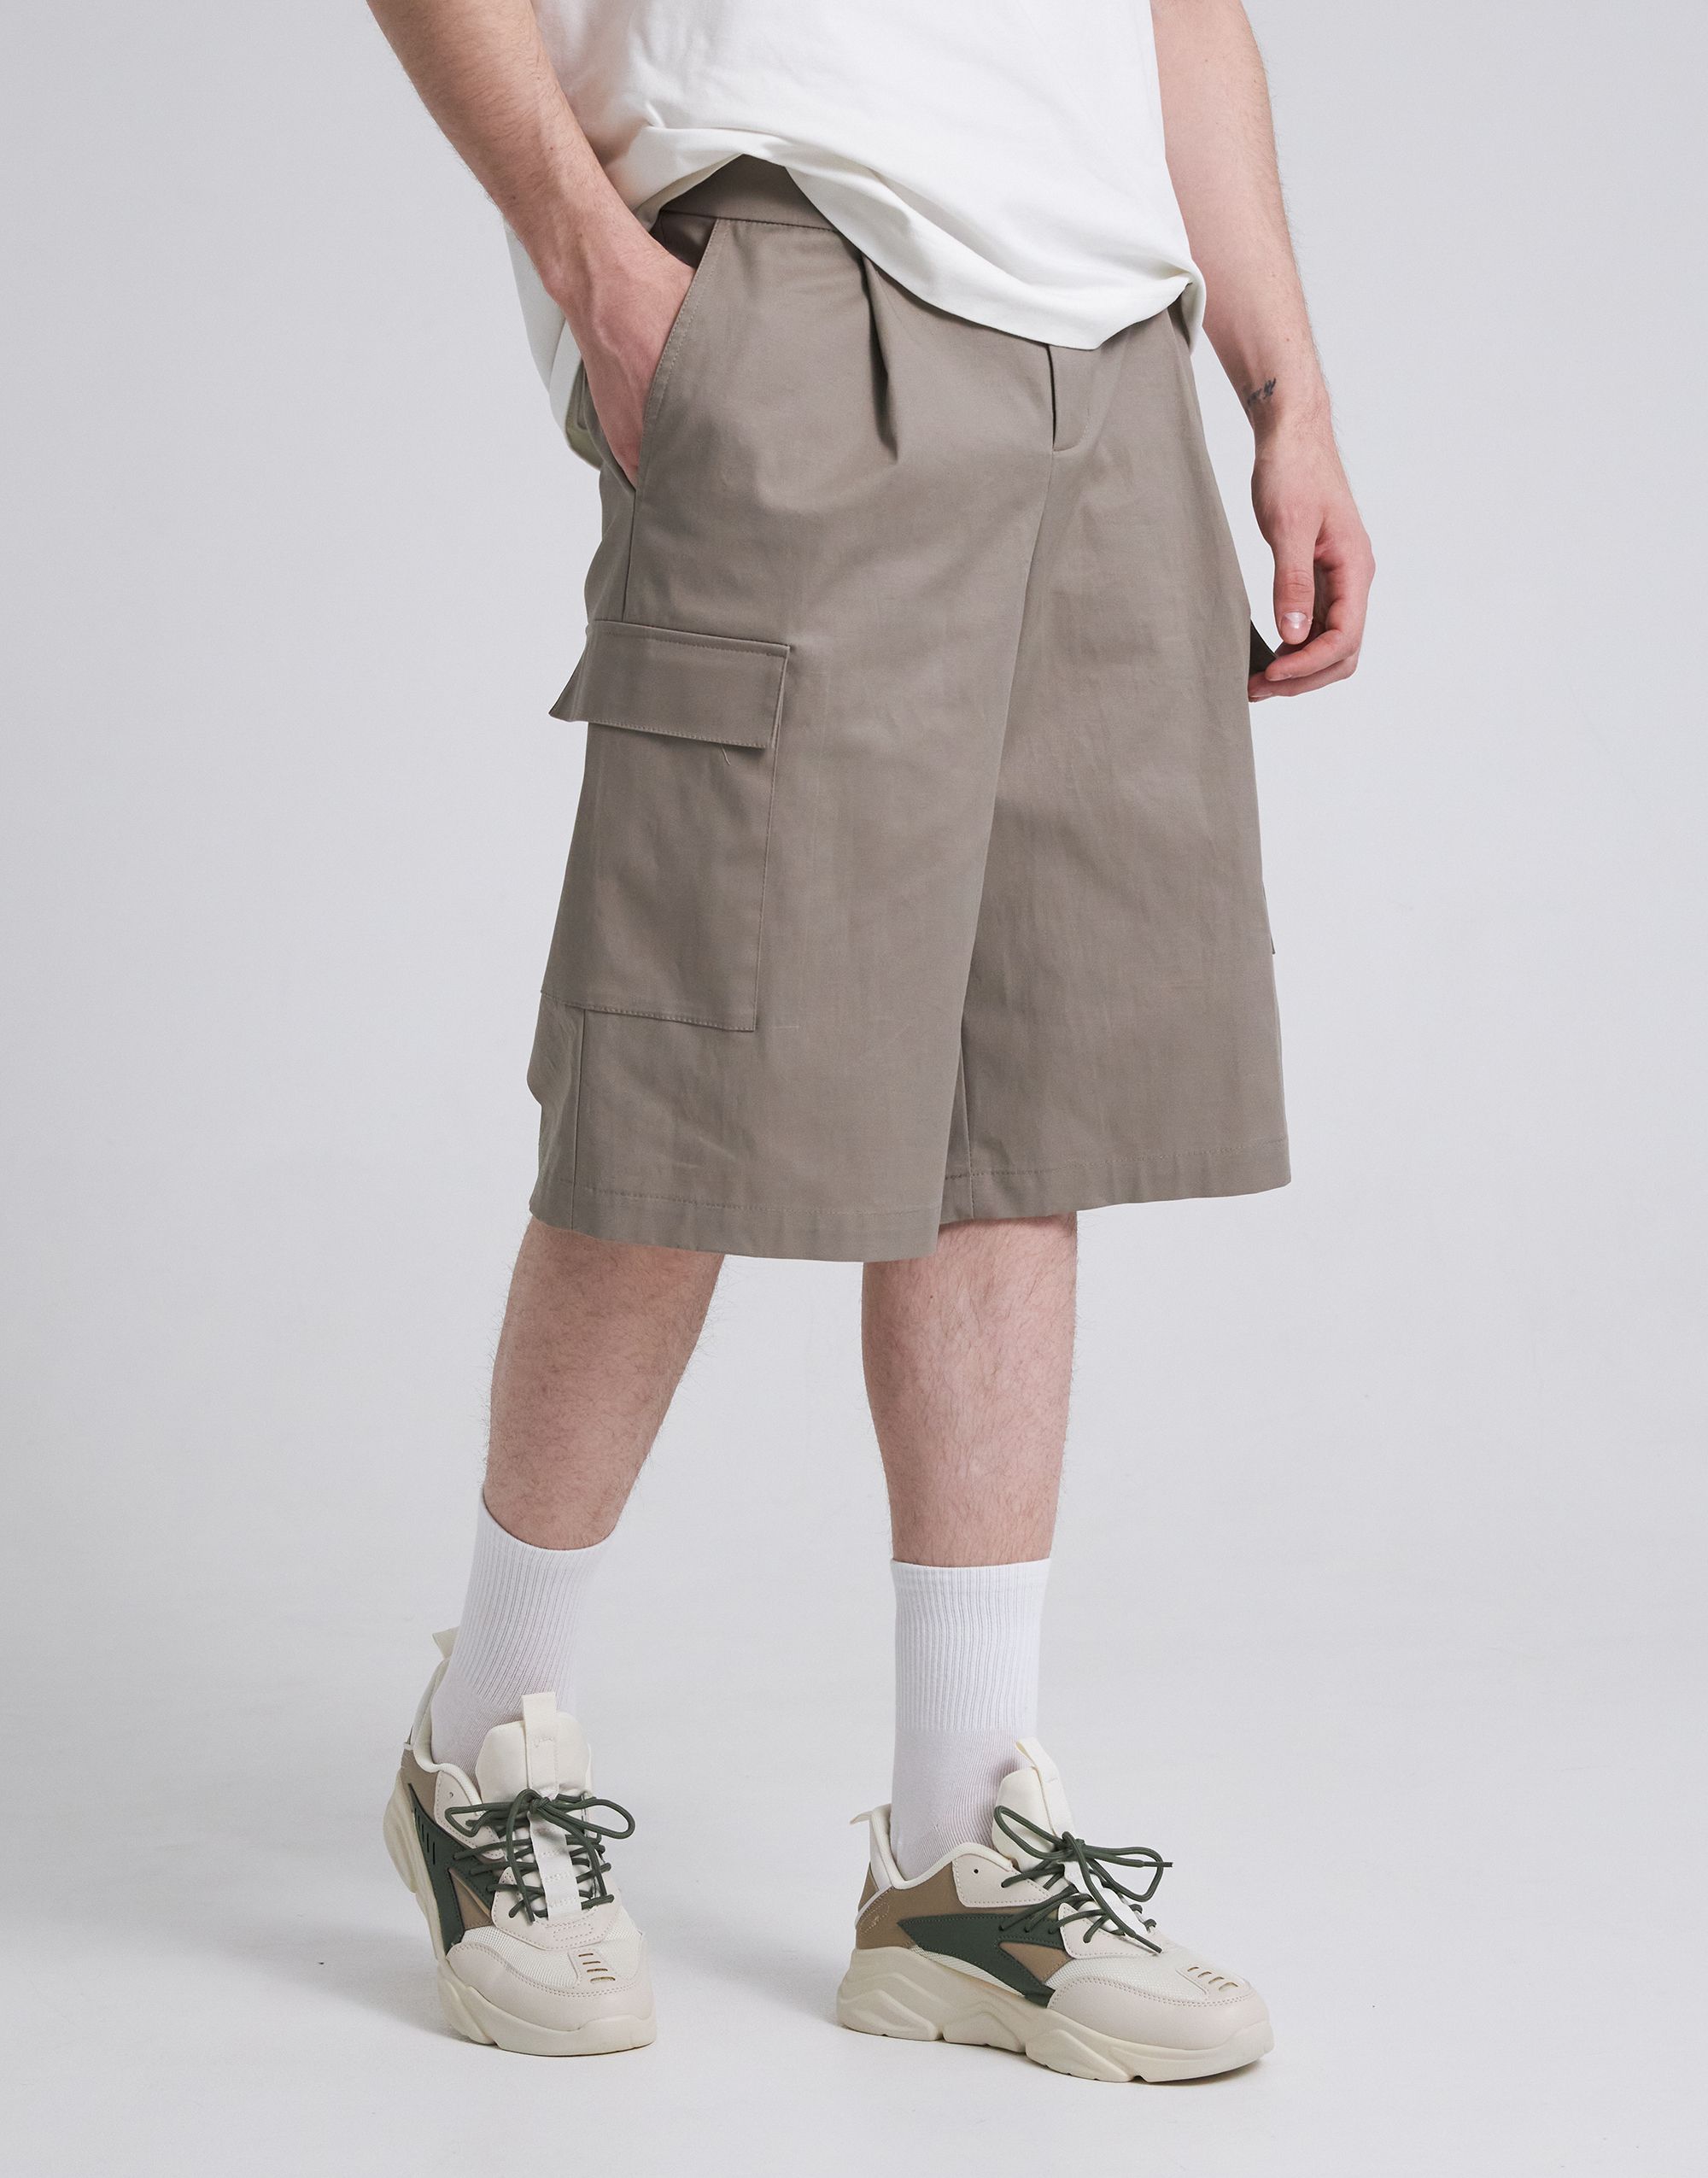 Shorts, pattern №1035